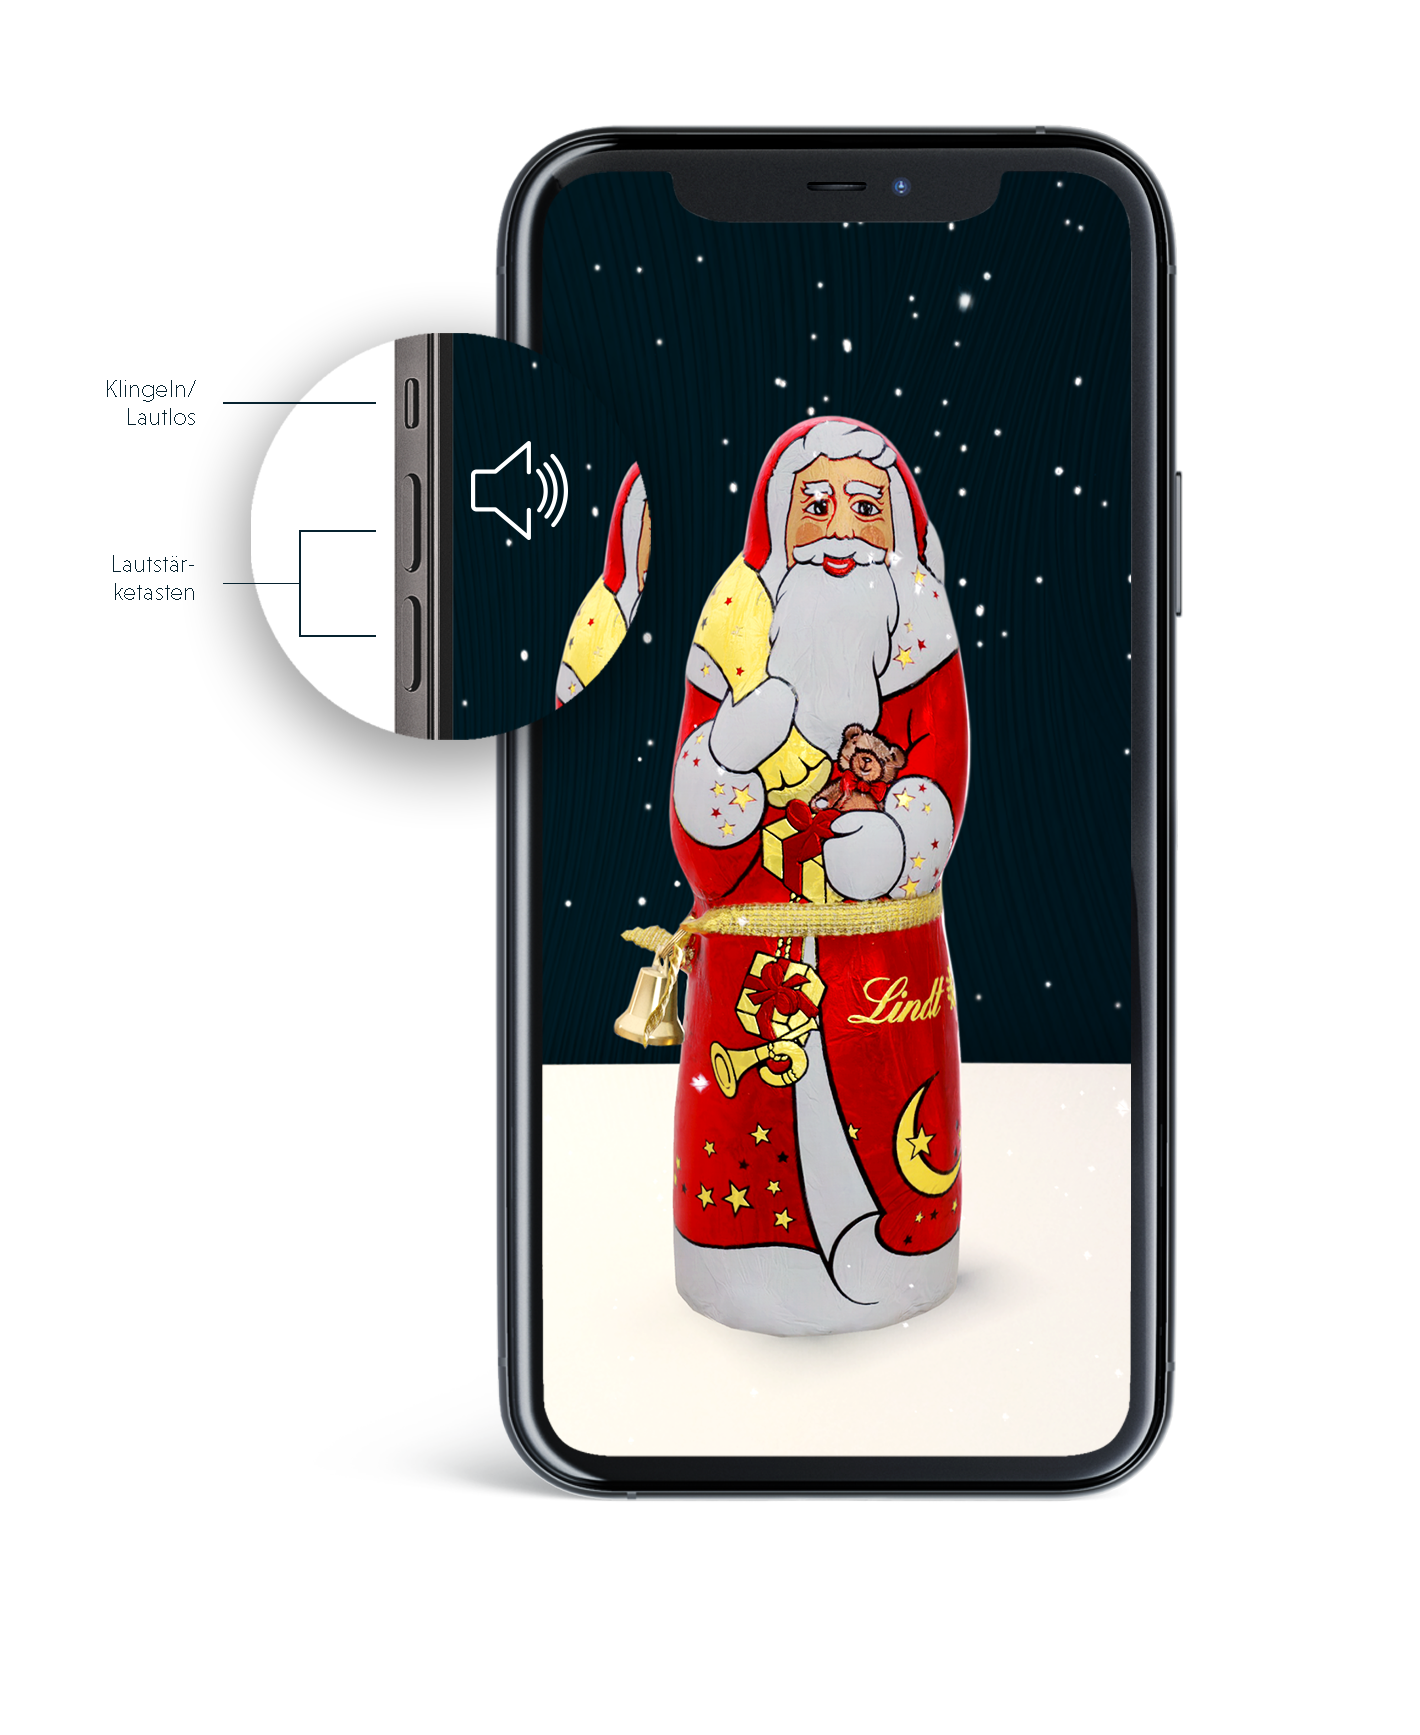 Weihnachtsmann_Iphone